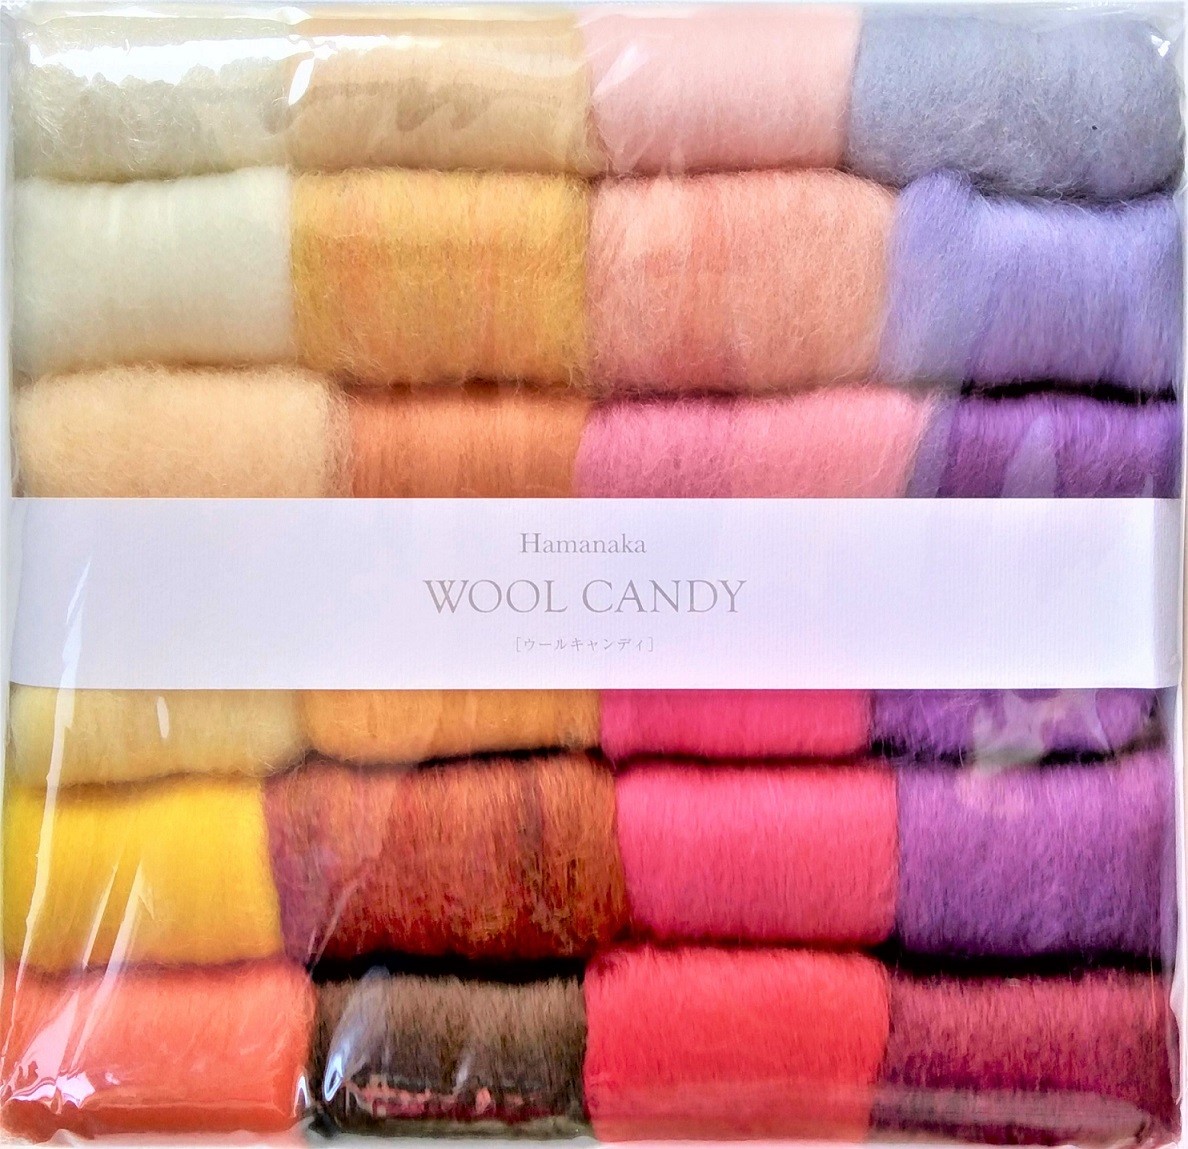 羊毛フェルト用素材 フェルト羊毛24色セット ウールキャンディ ハマナカ WOOL CANDY 手芸 材料 ハンドクラフト